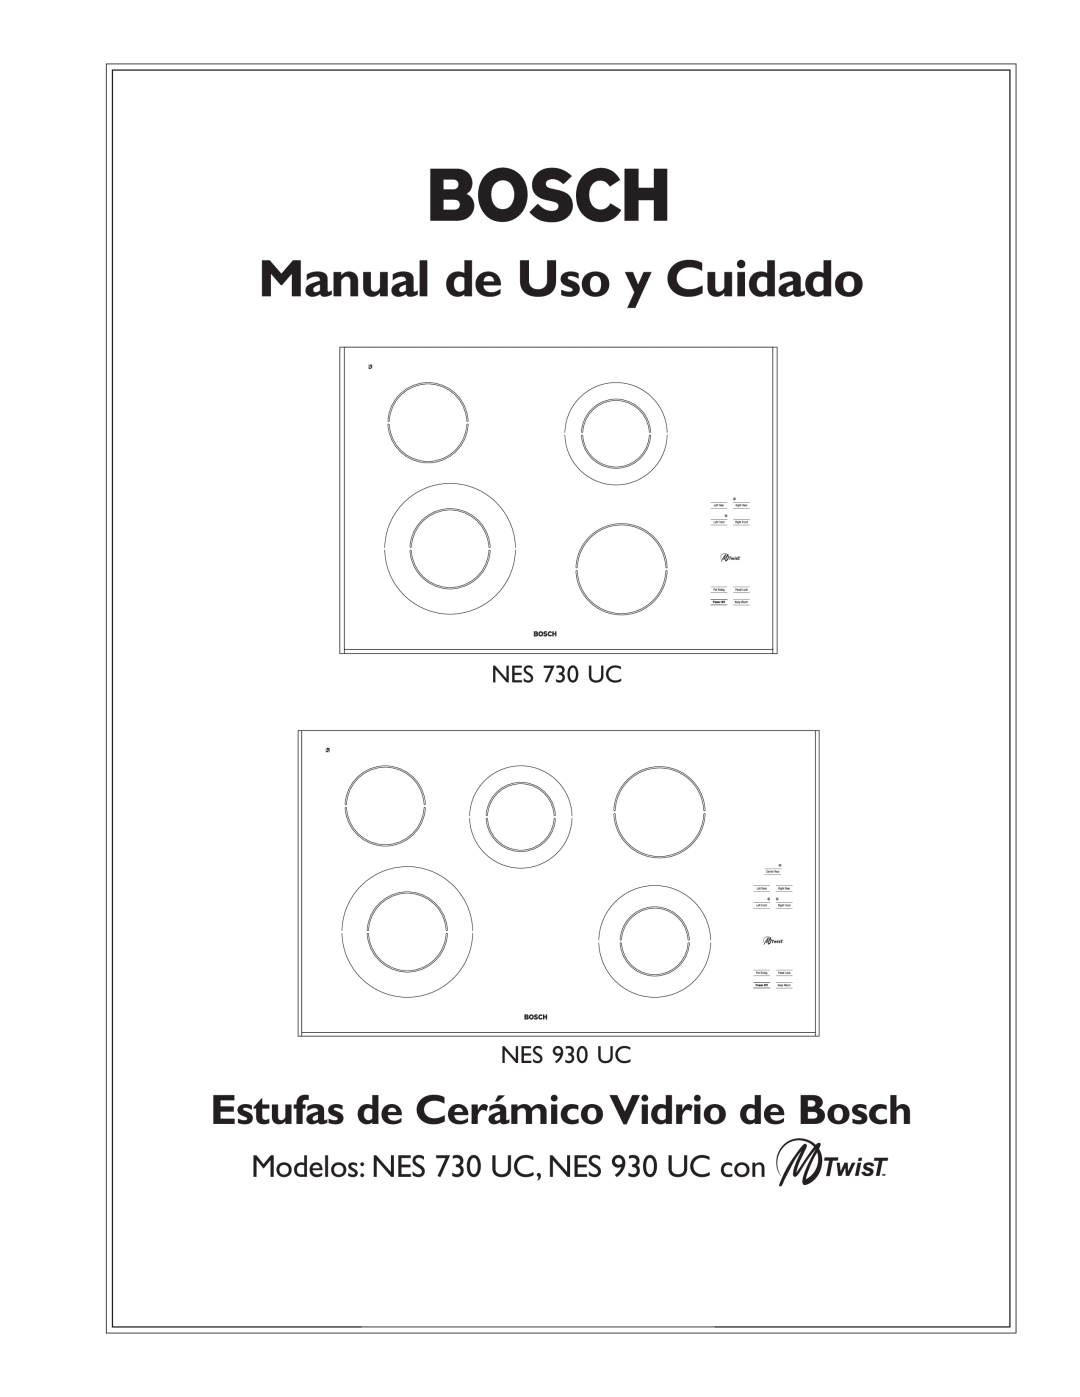 Bosch Appliances manual Manual de Uso y Cuidado, Estufas de Cerámico Vidrio de Bosch, NES 730 UC NES 930 UC 